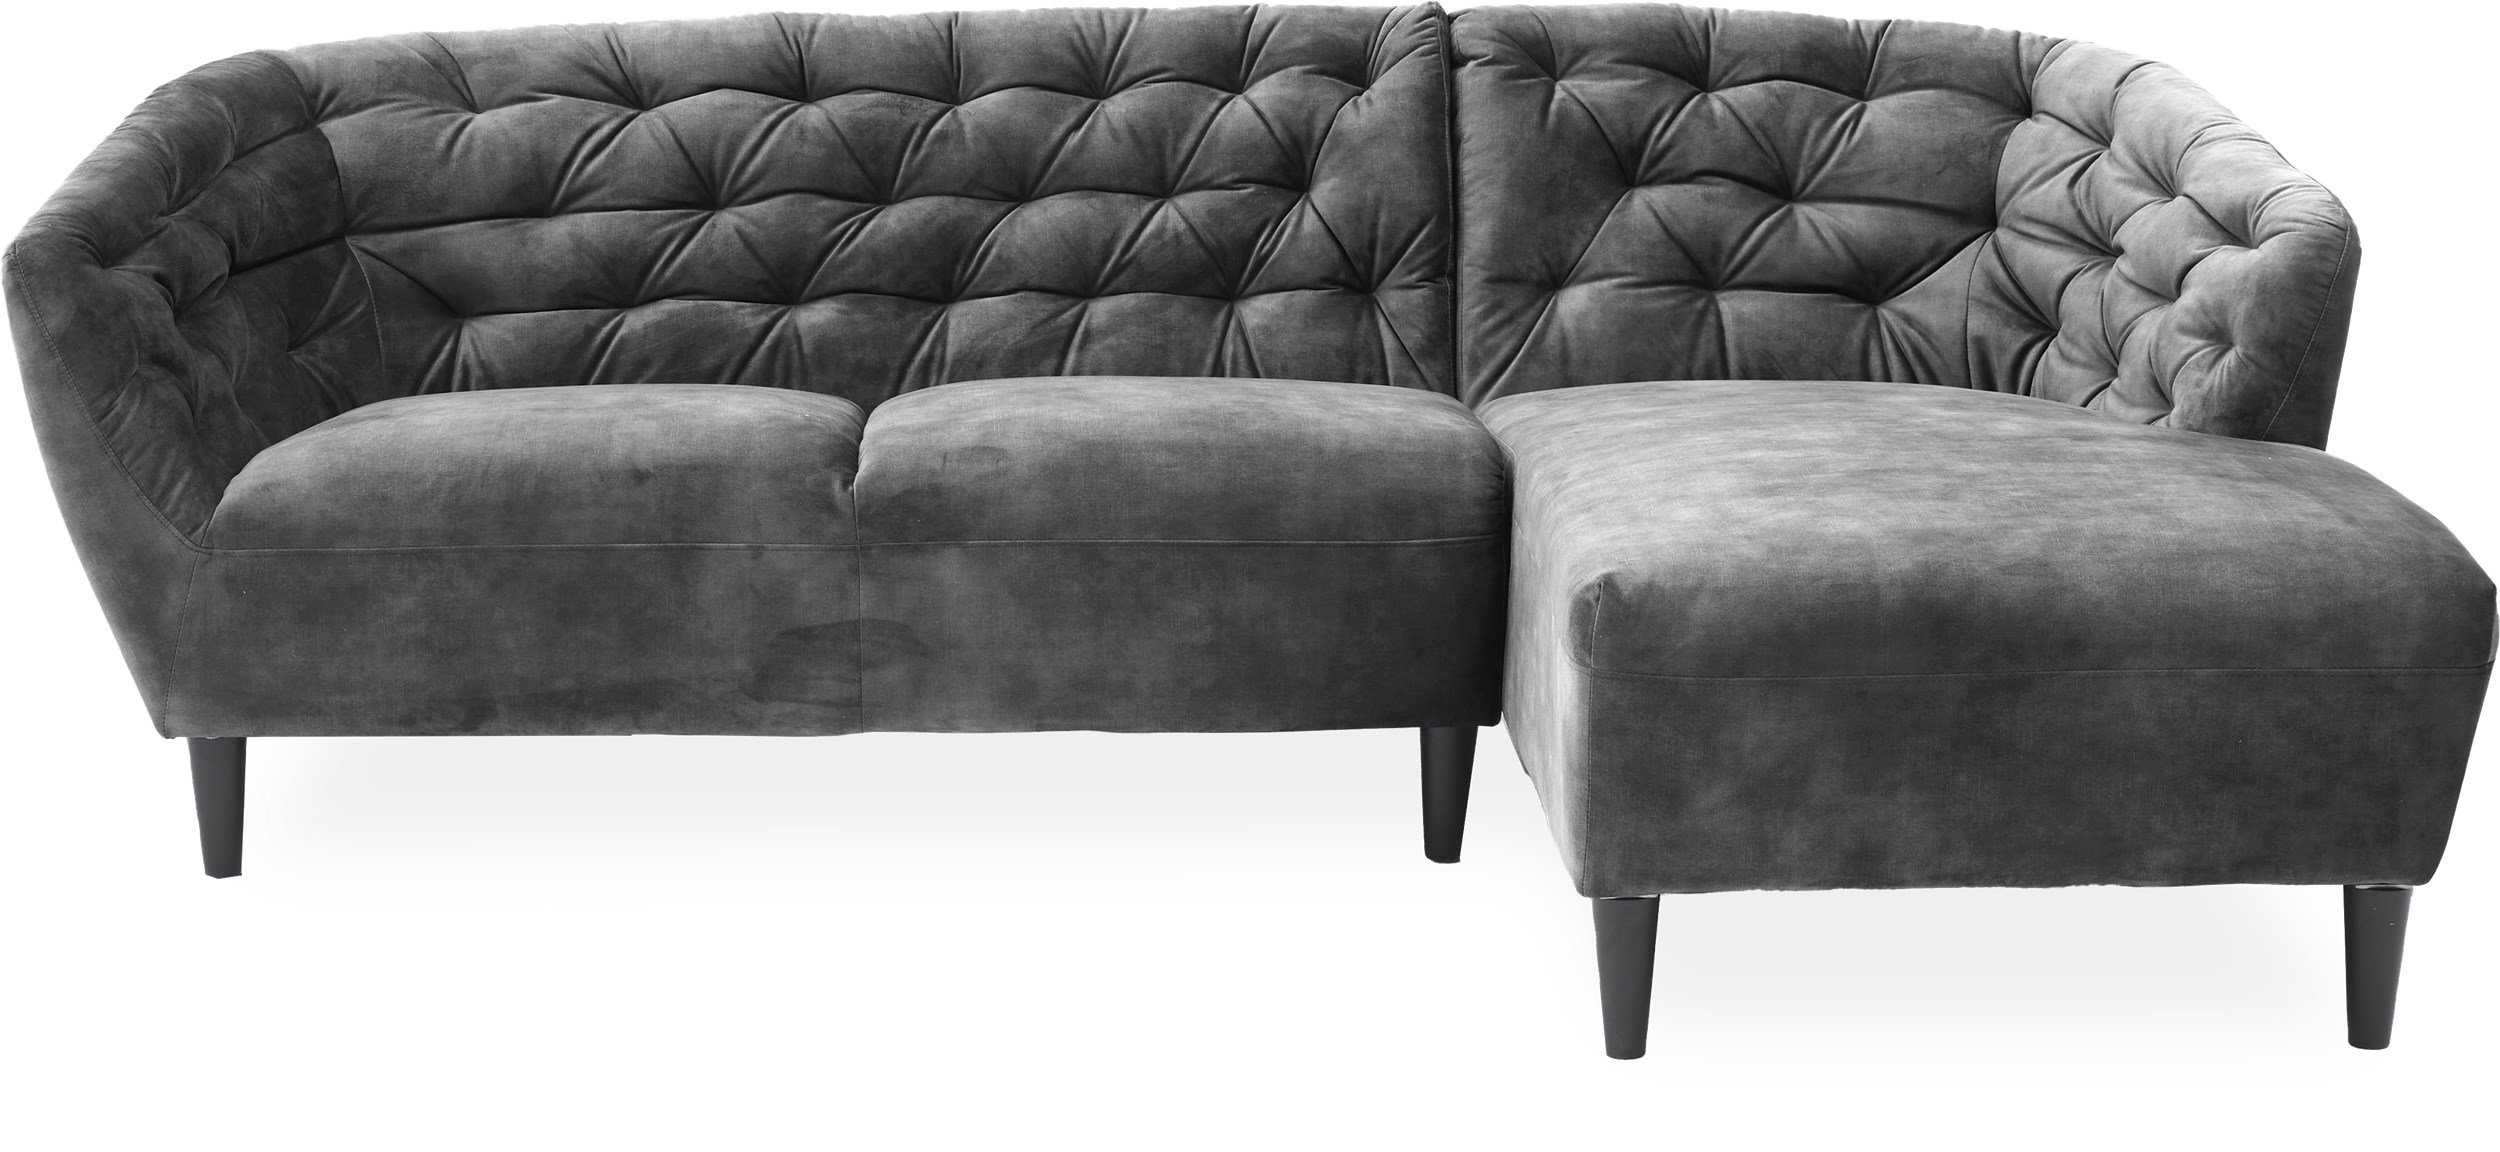 Ria Soffa med schäslong - Decent 32 Grey textil och ben av svartmålat gummiträ